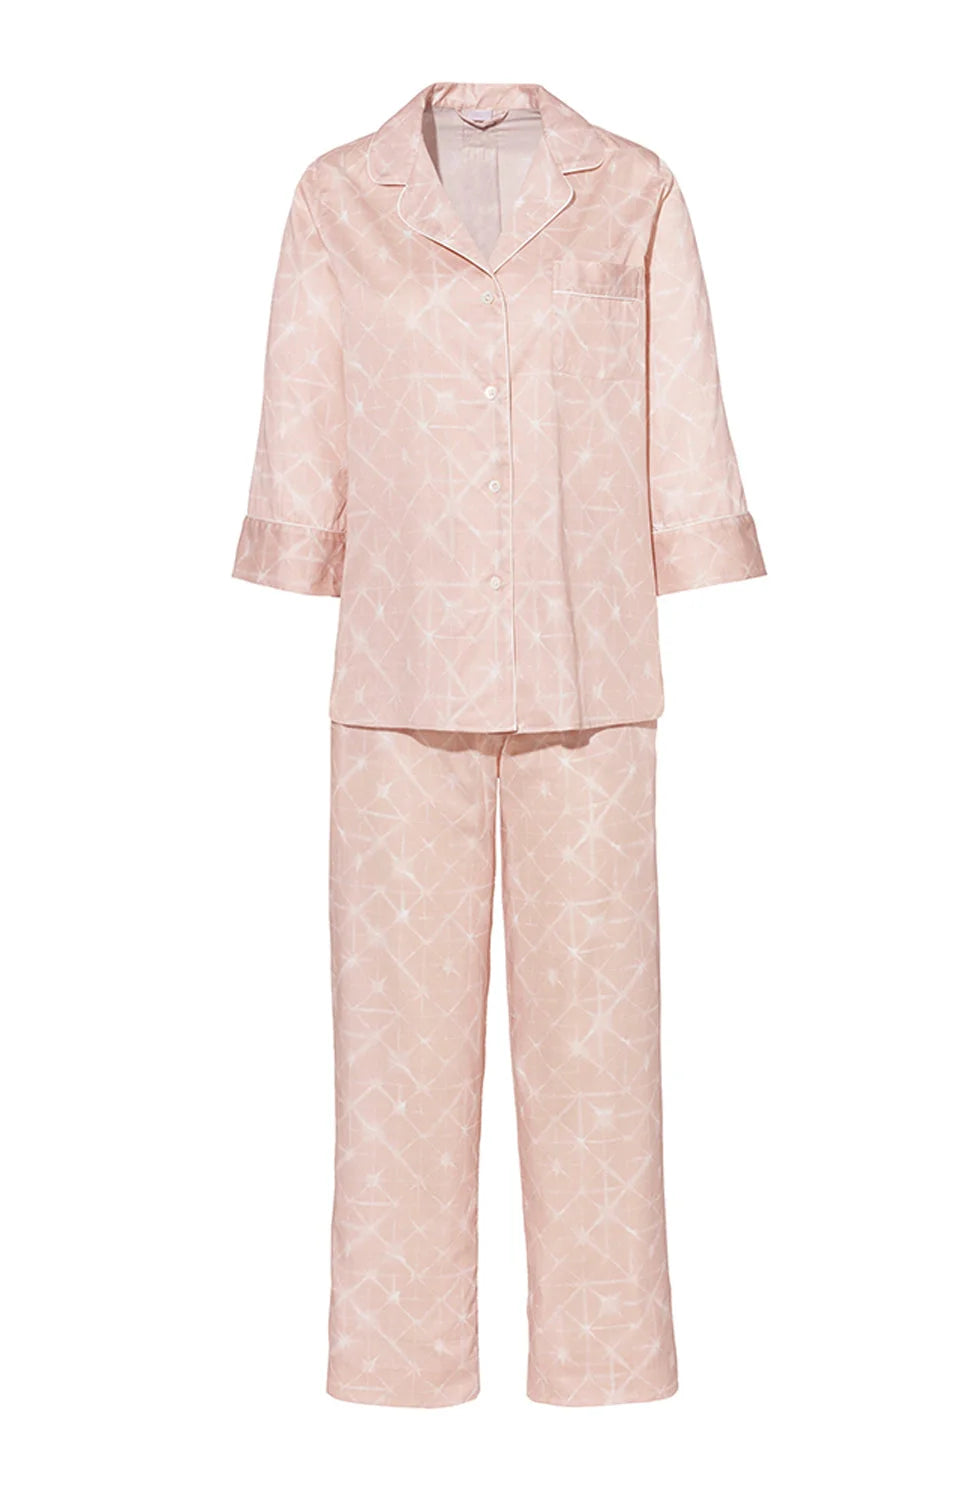 %shop_name_% Zimmerli_Cotton Sateen Print Pajama Cropped Set _ Loungewear_ 2880.00